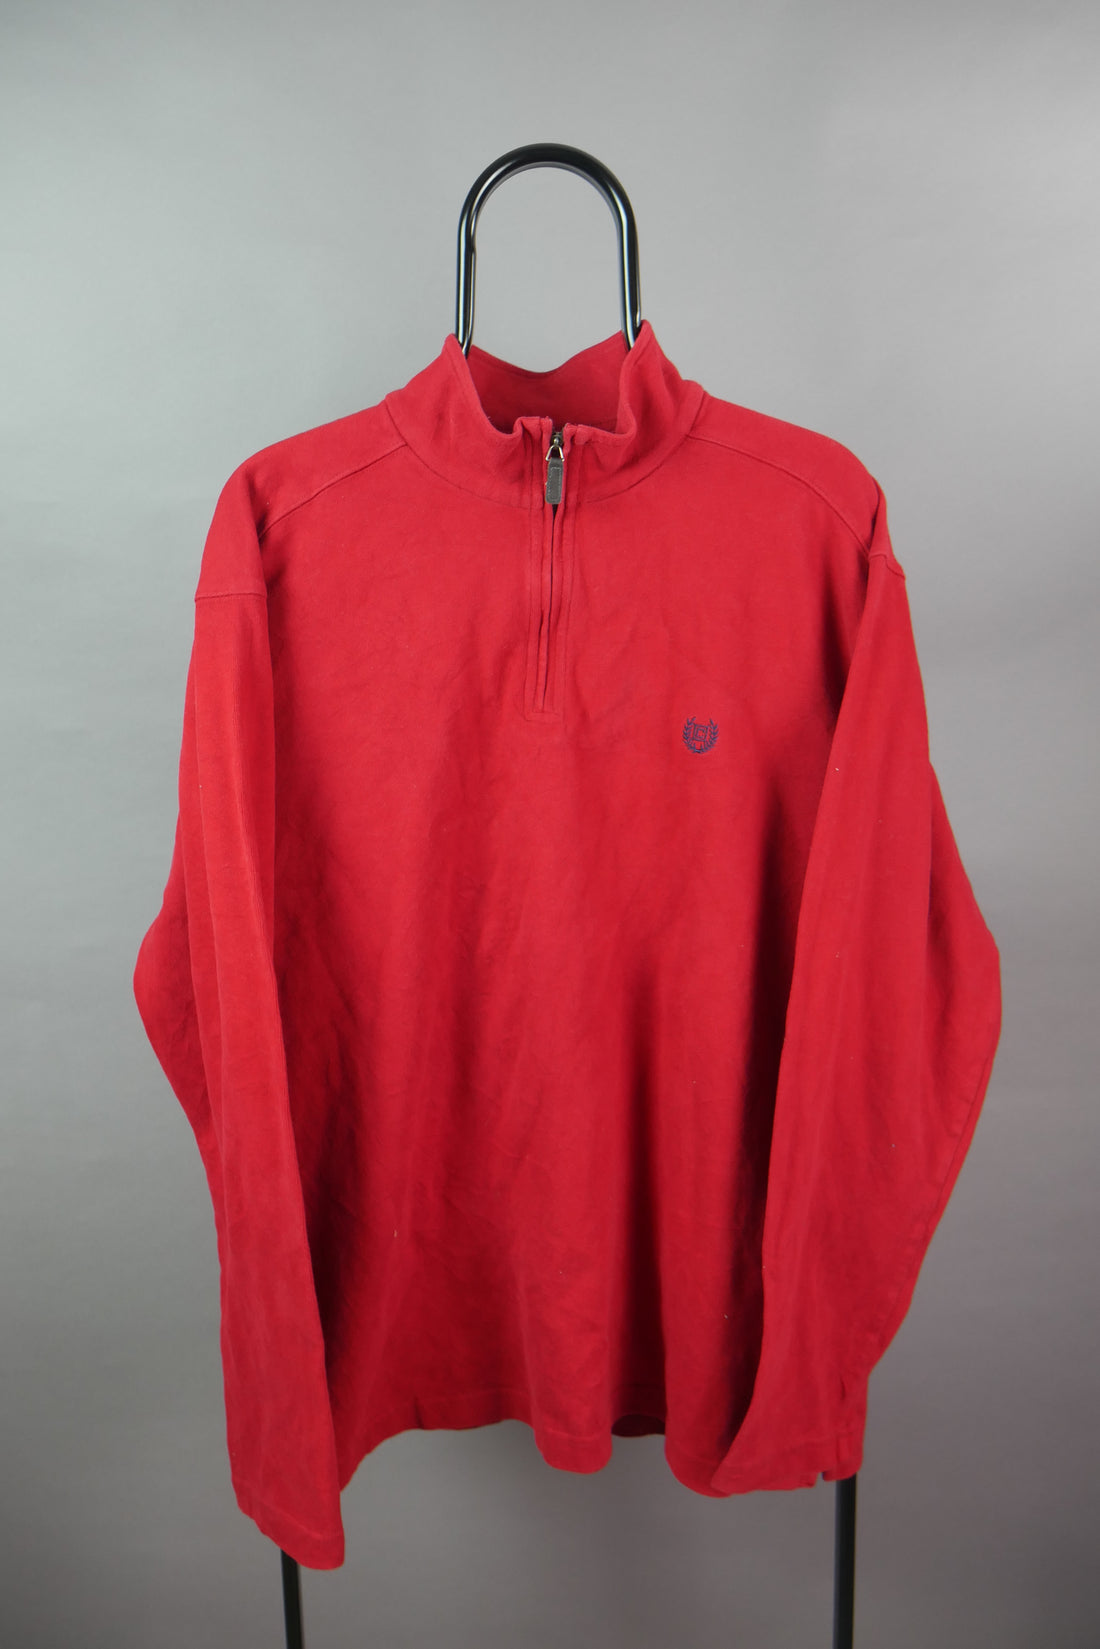 The Chaps 1/4 Zip Sweatshirt (XL)